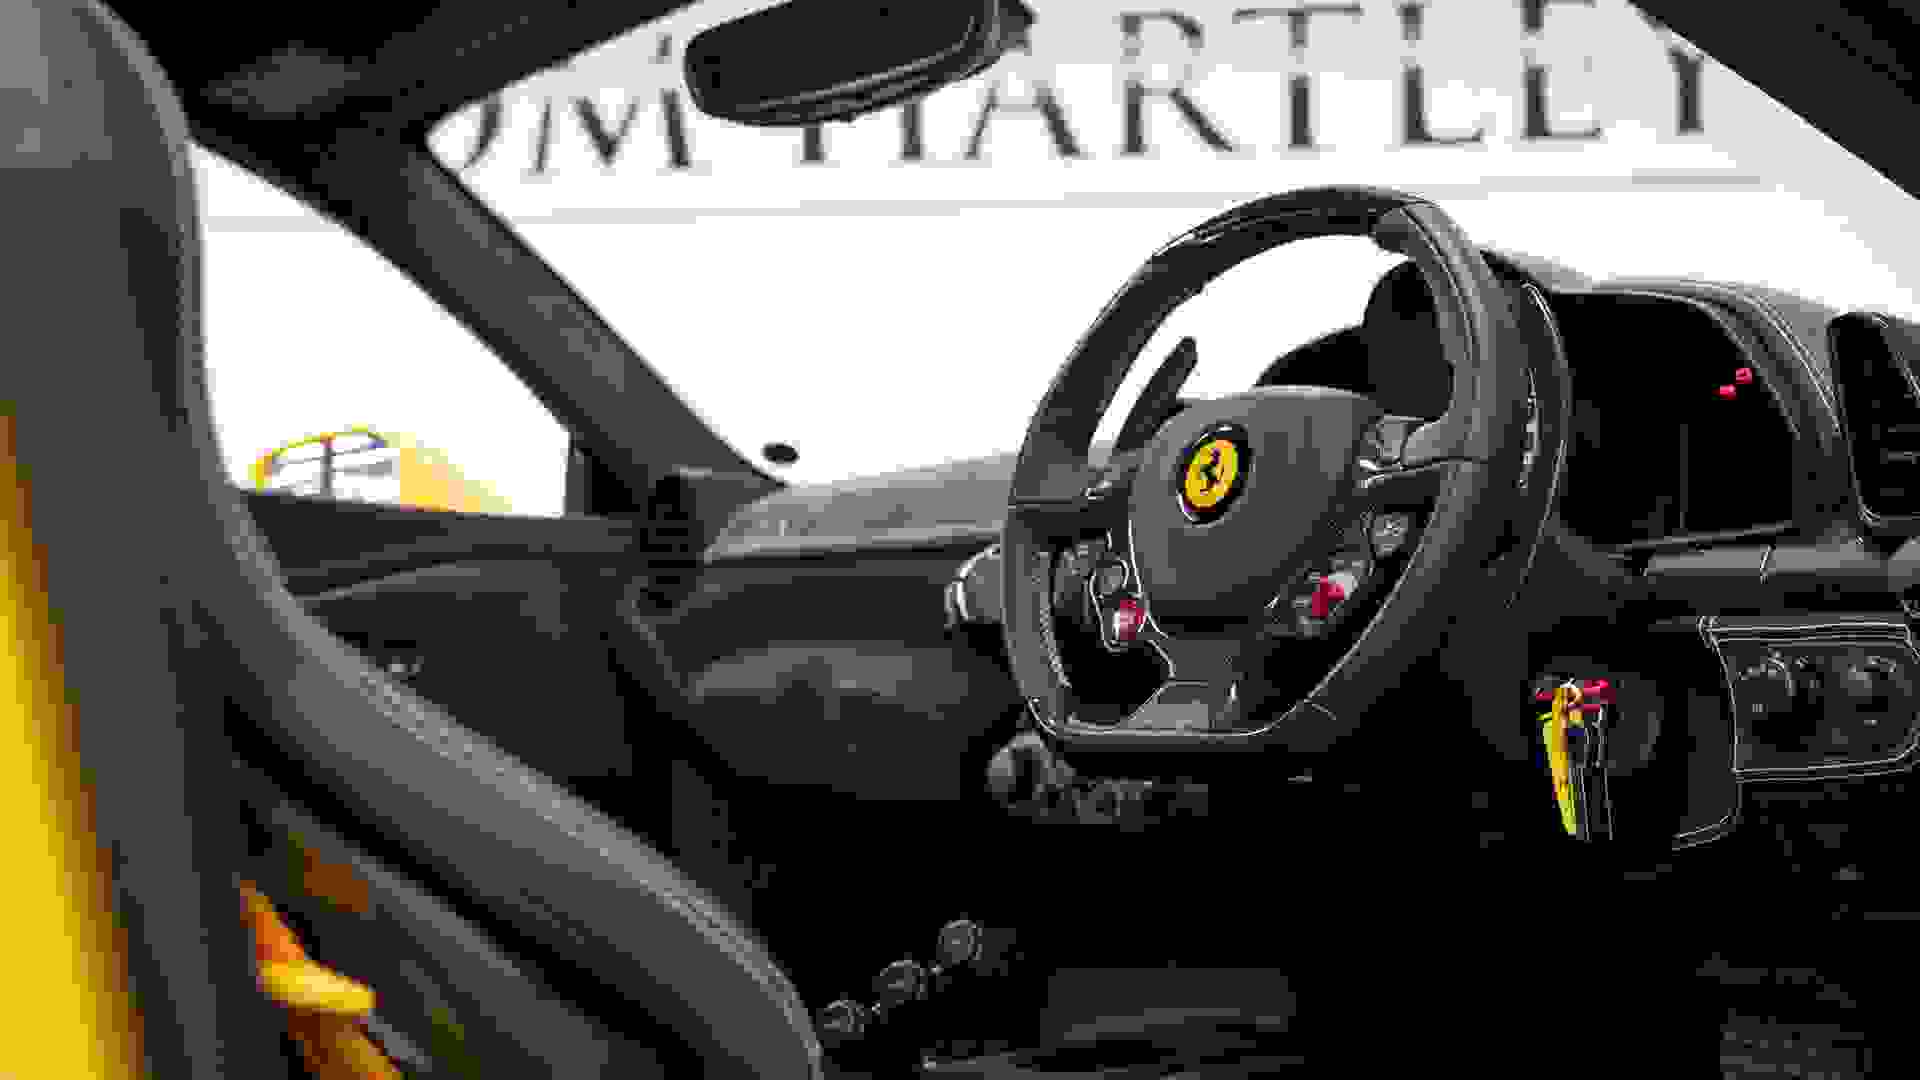 Ferrari 458 Photo d0449480-ce11-48e0-b54f-f52bd92c8aca.jpg